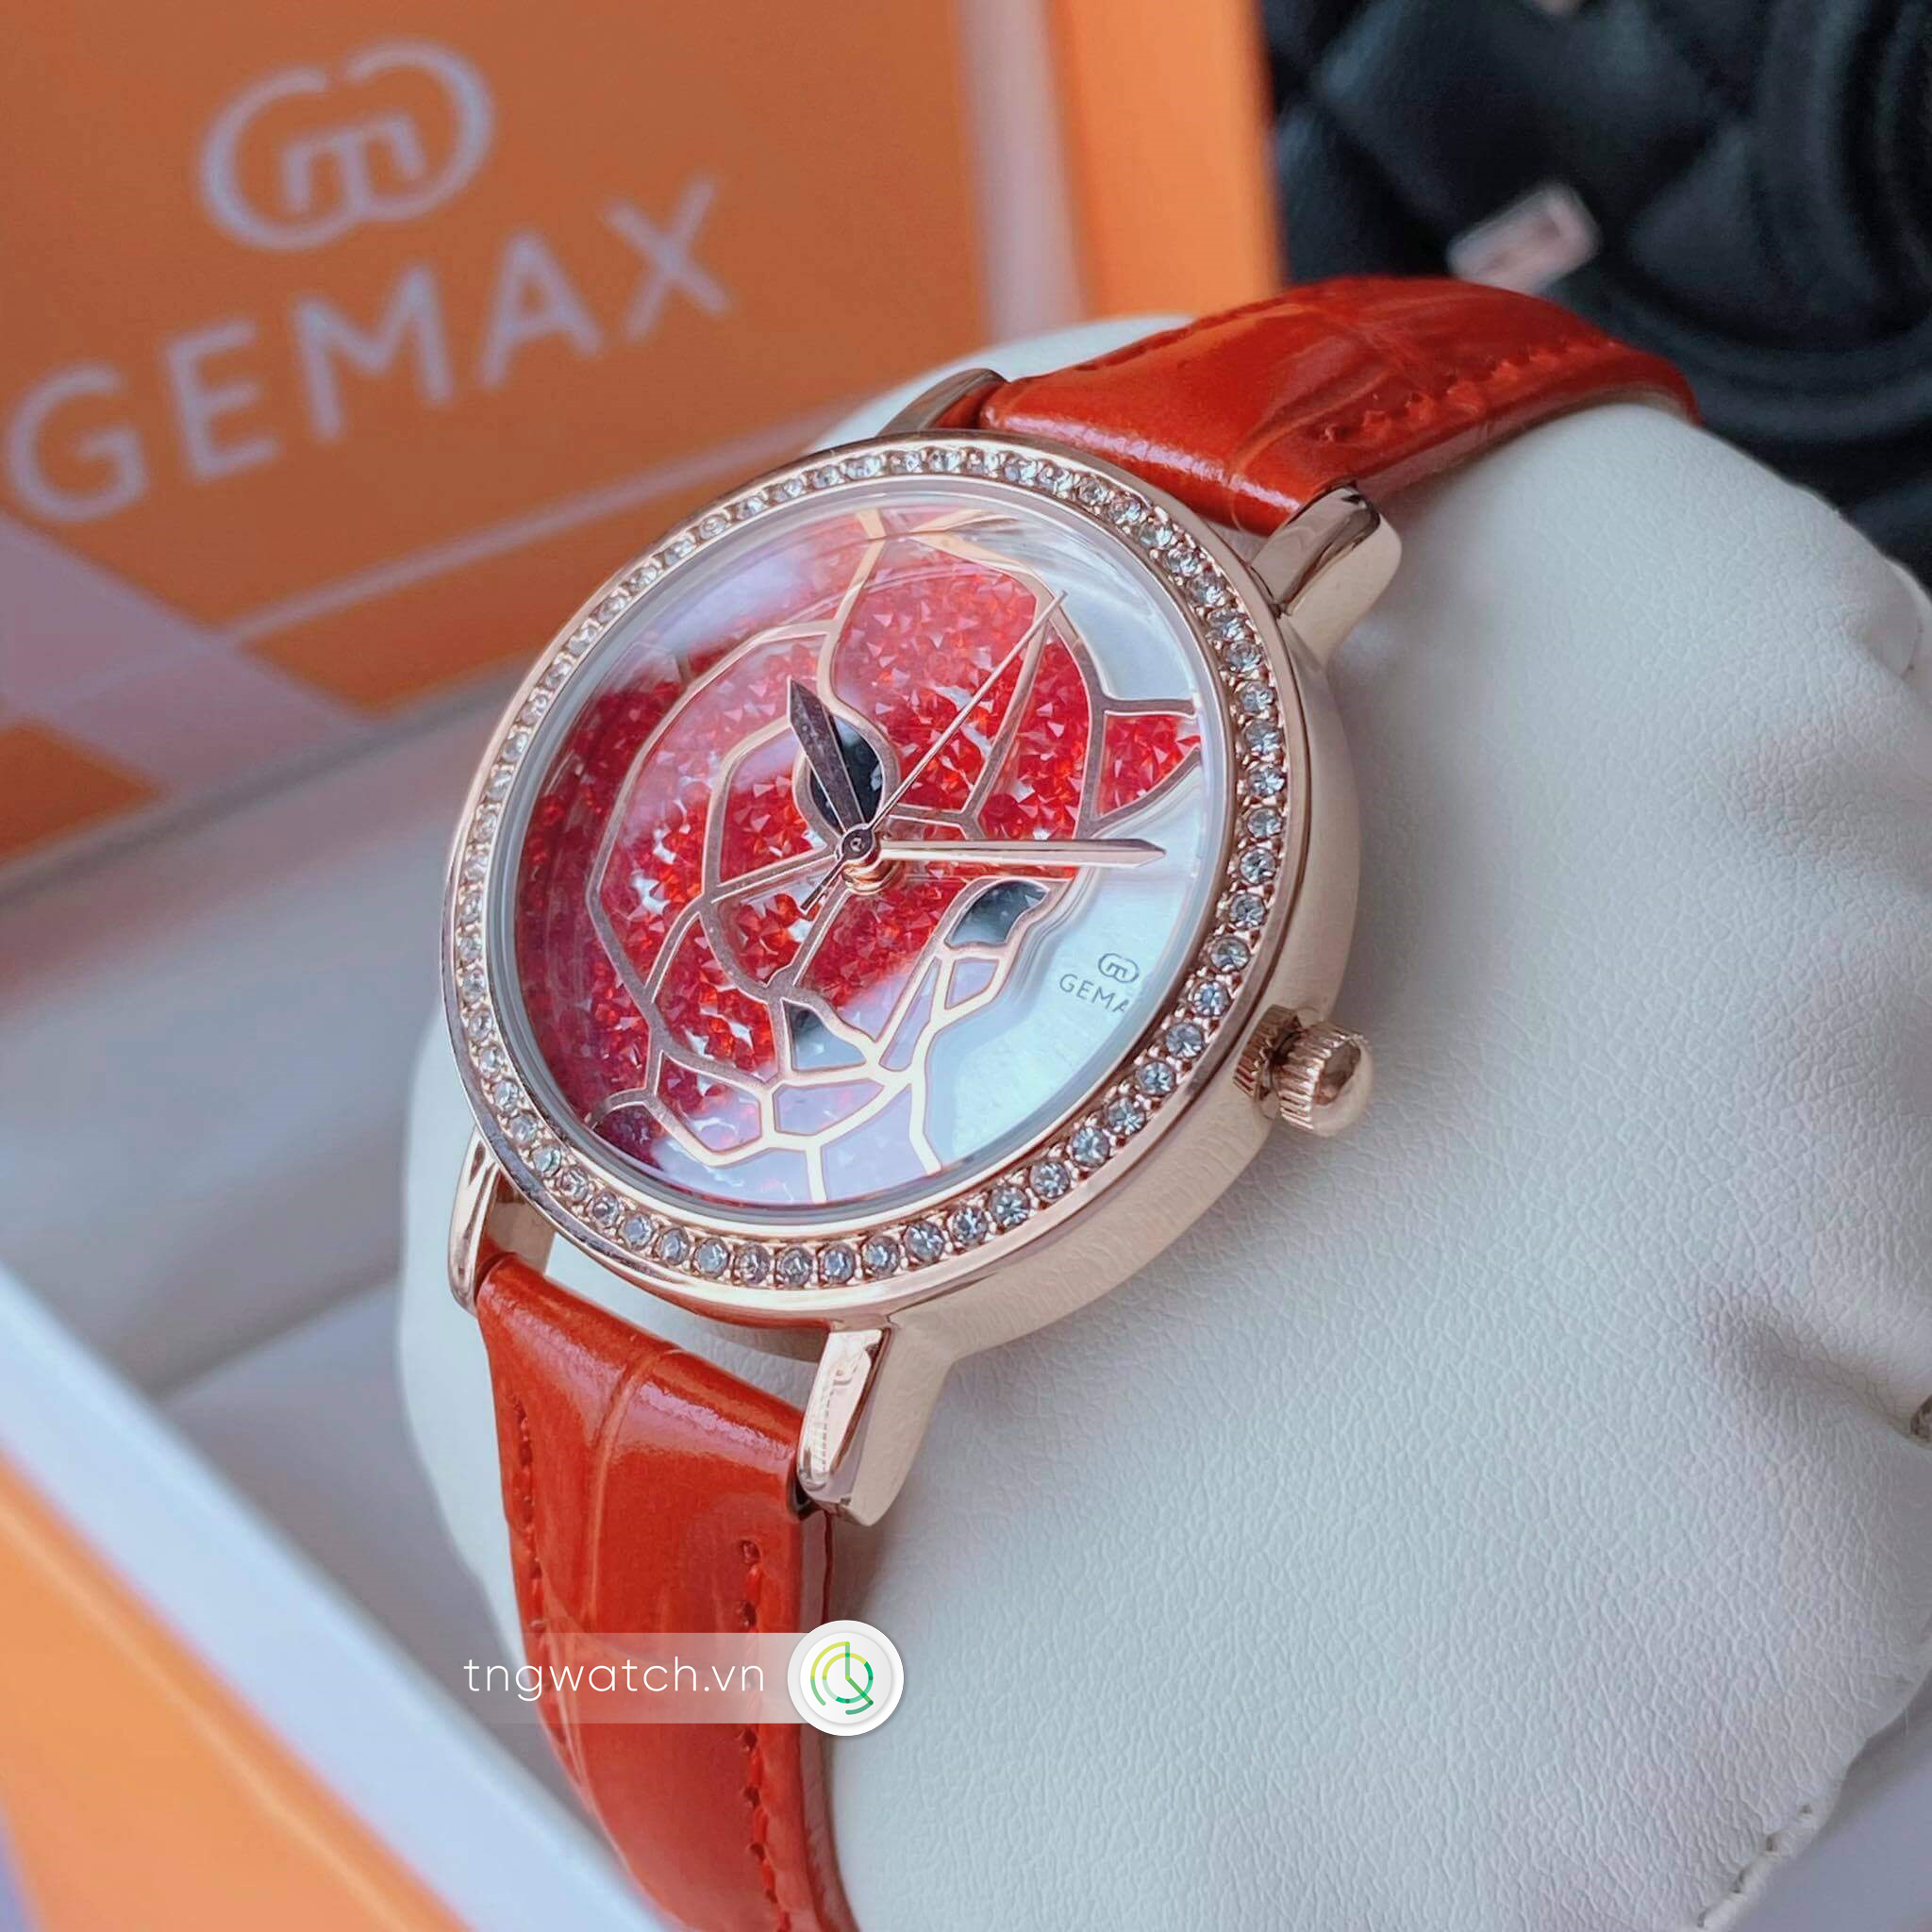 Đồng hồ Gemax CI235R3R